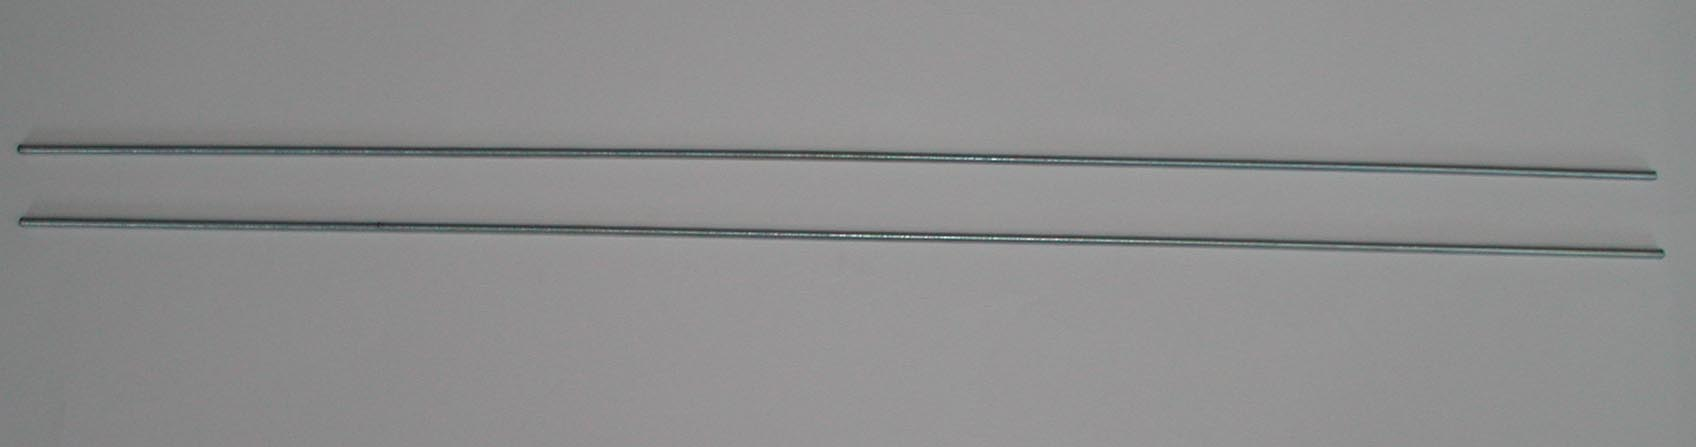 Indsæt en stål split ind i hullet markeret i fig. 17 og hammer 50% splittens længde i hullet (fig. 18-19).